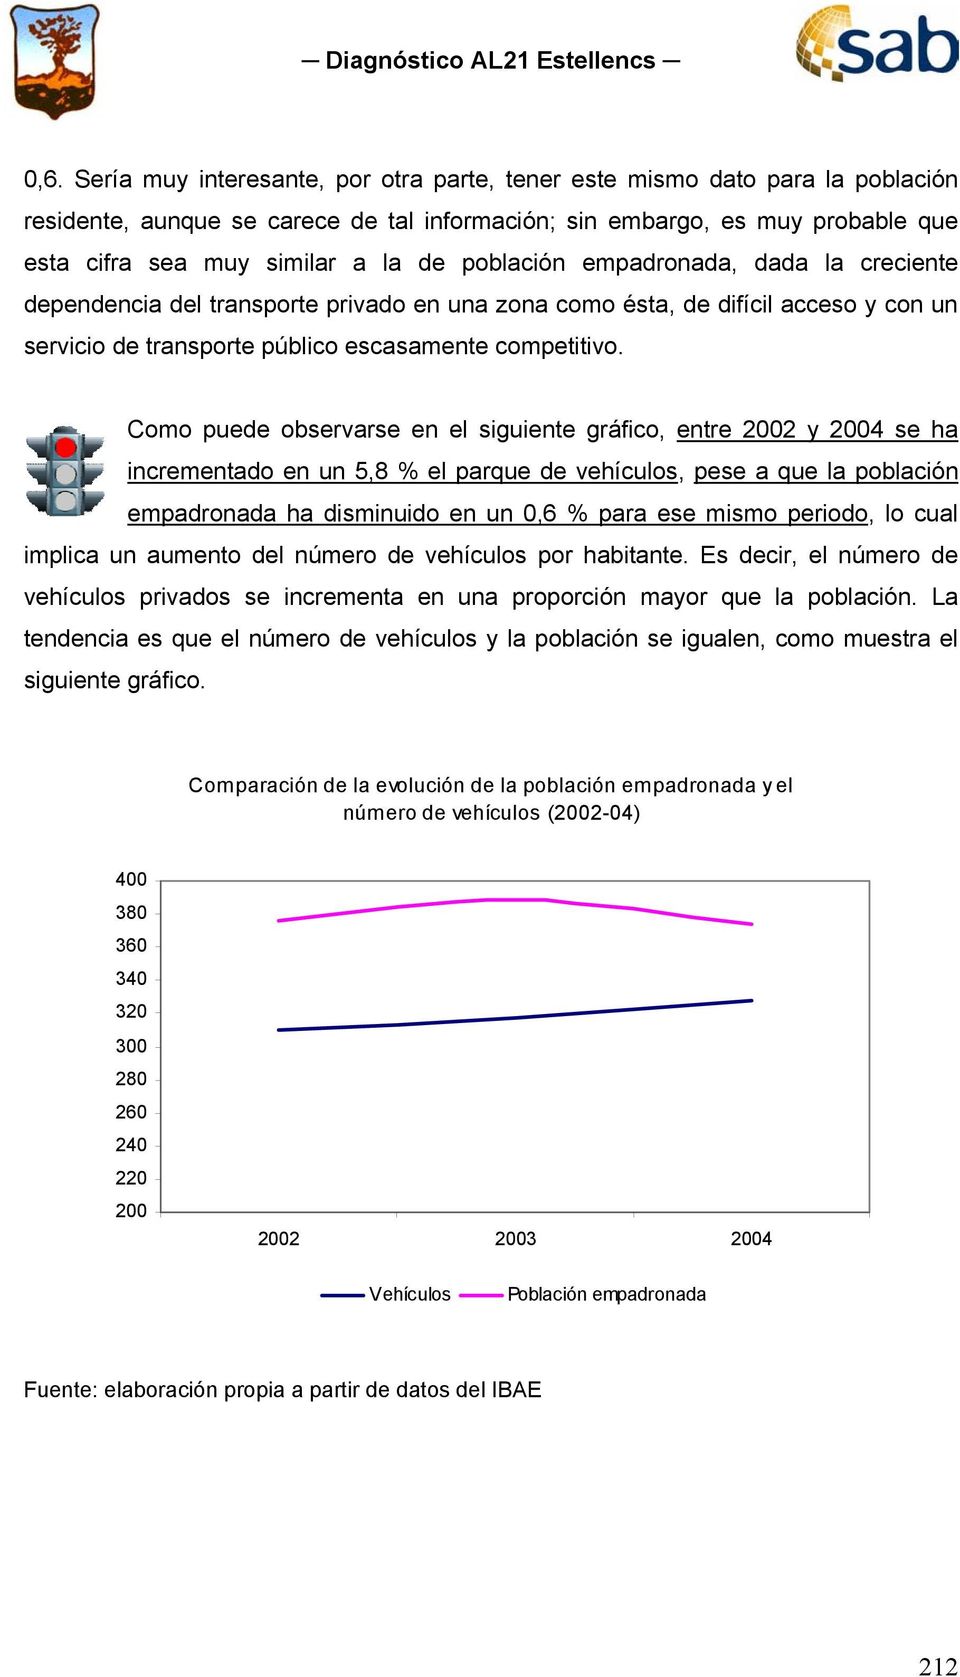 Como puede observarse en el siguiente gráfico, entre 2002 y 2004 se ha incrementado en un 5,8 % el parque de vehículos, pese a que la población empadronada ha disminuido en un 0,6 % para ese mismo